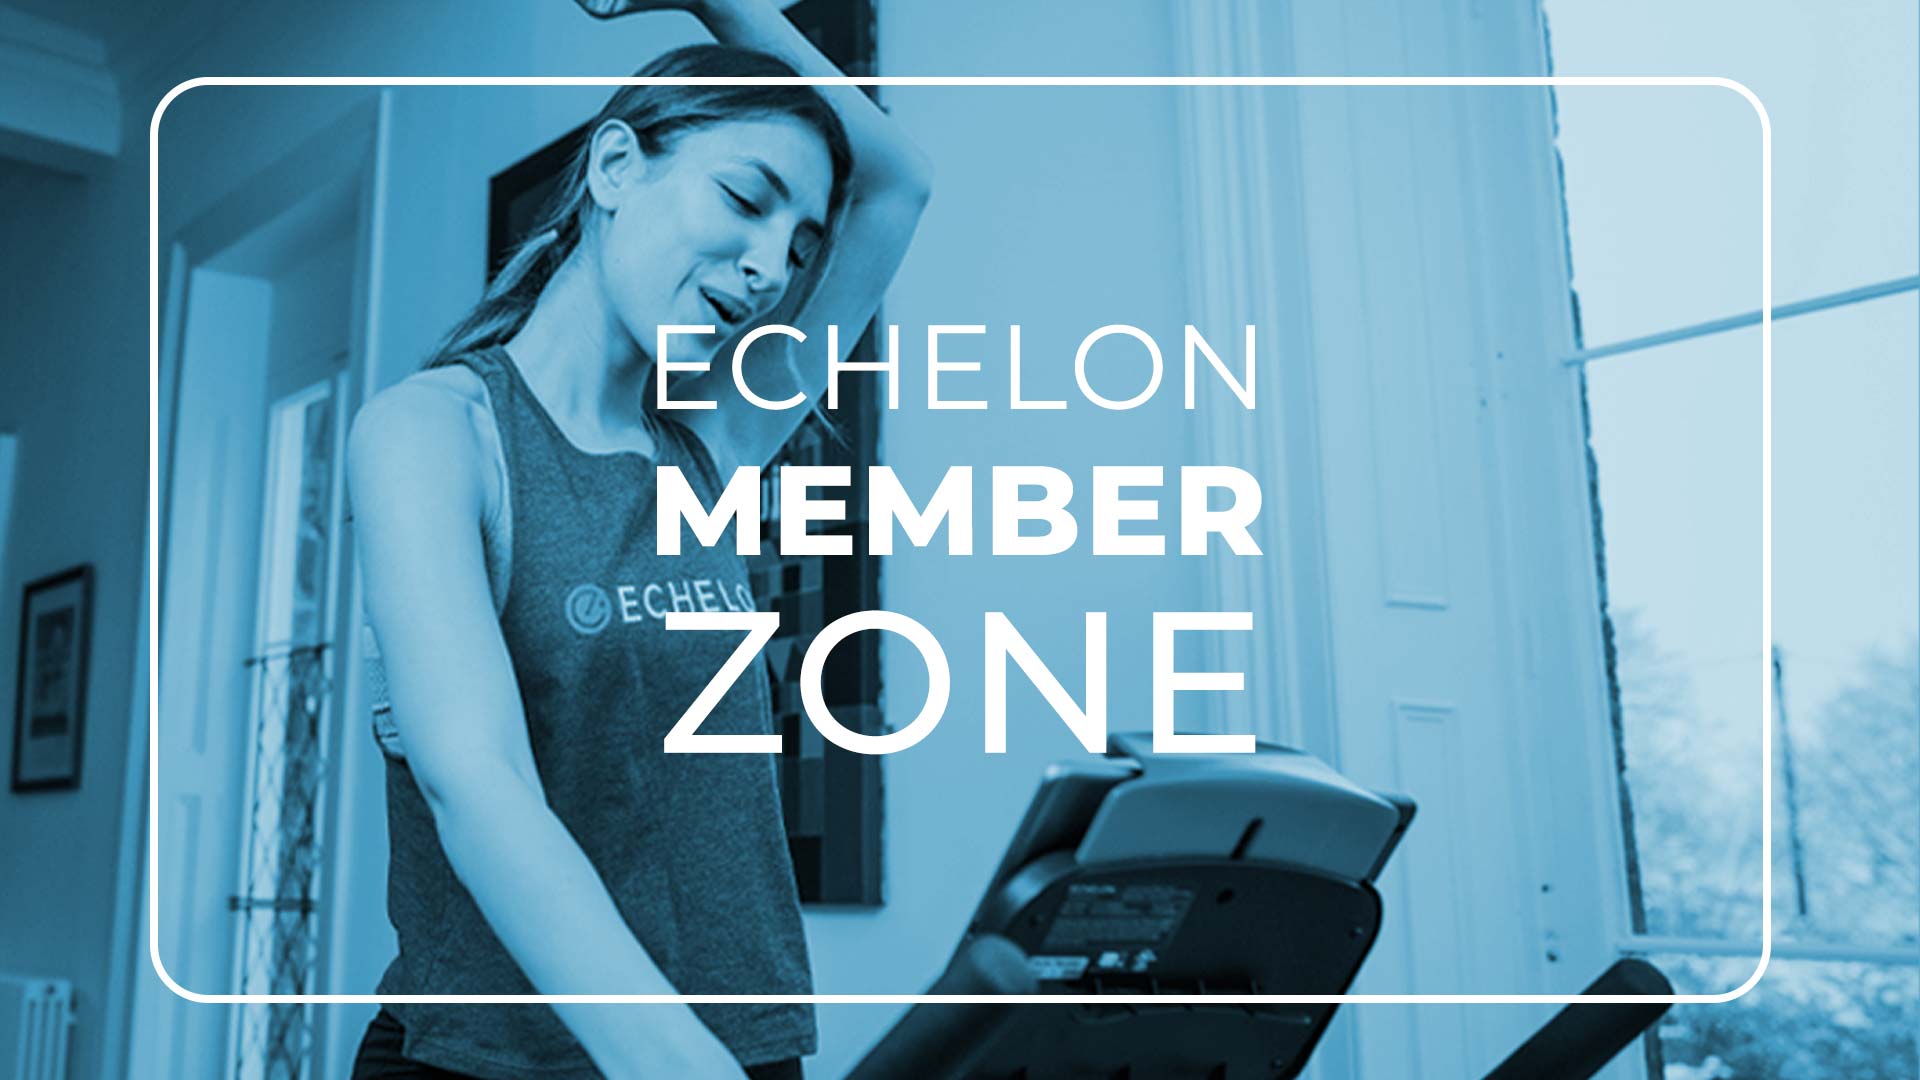 Echelon Member Zone